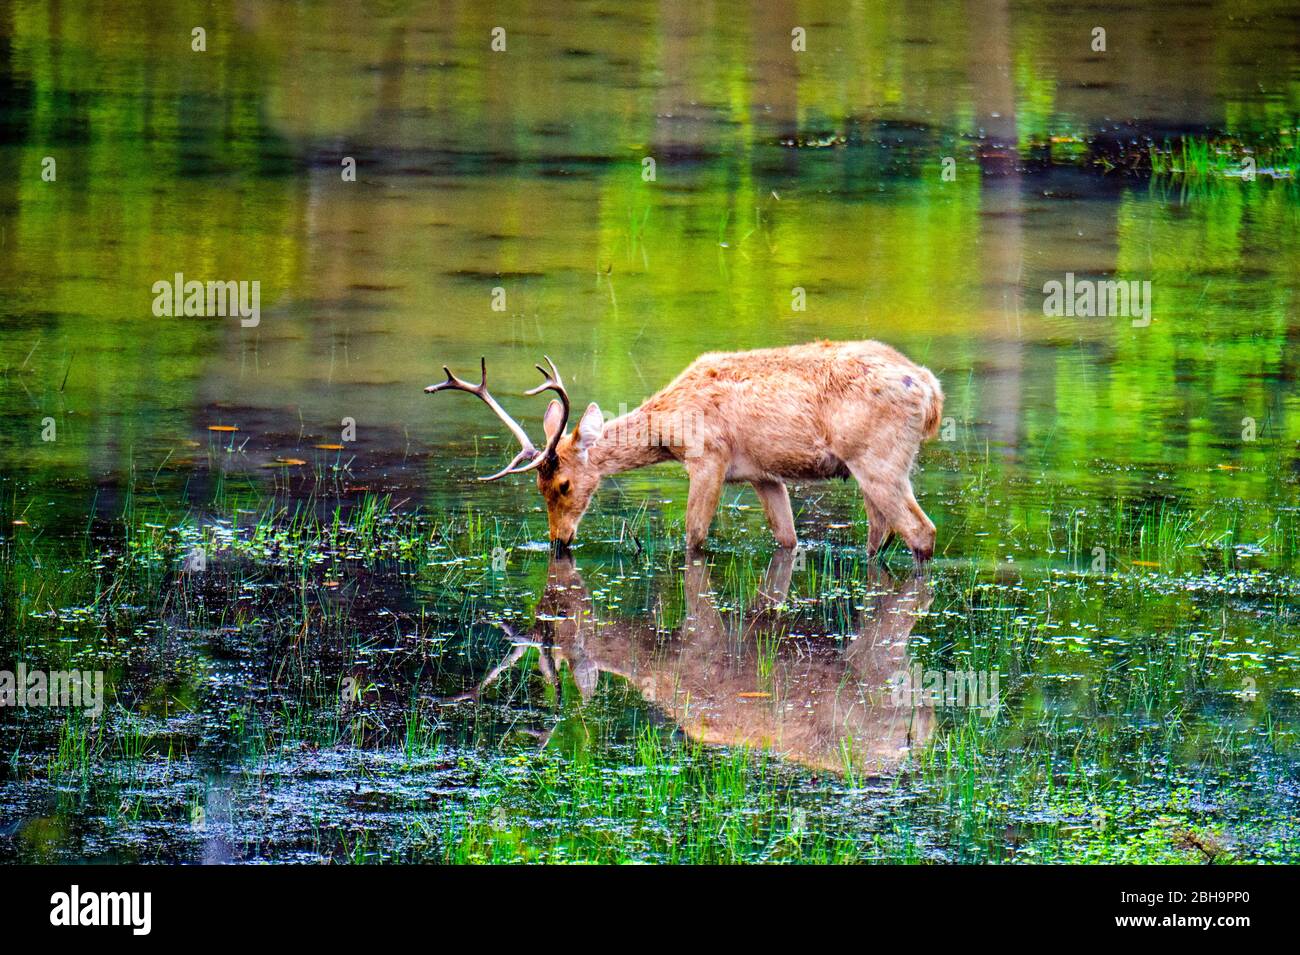 Barasingha (cervo paludato) che riflette in acqua, India Foto Stock